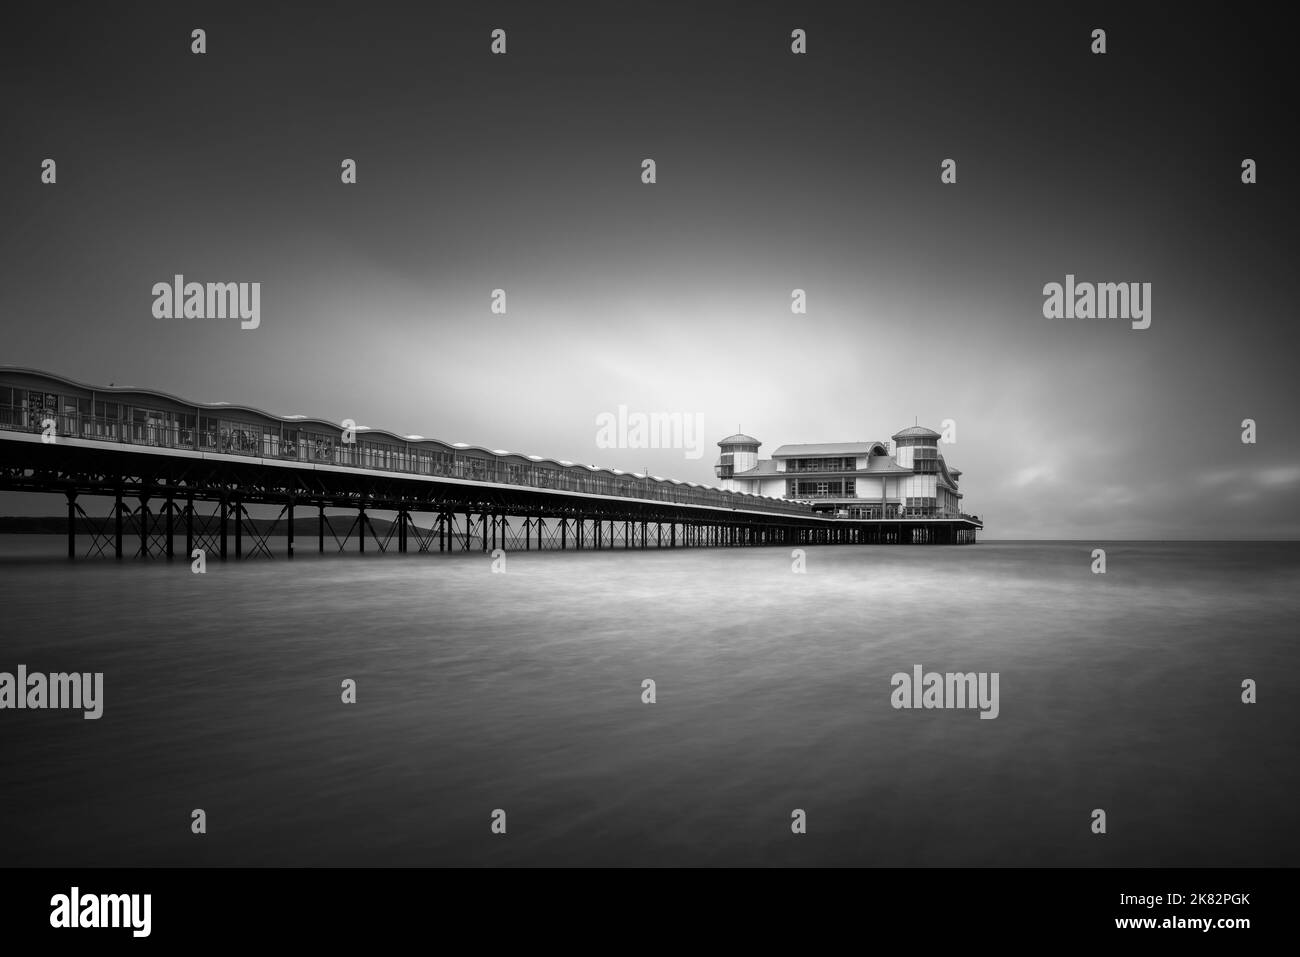 Ein Schwarz-Weiß-Bild des Grand Pier im Bristol Channel bei Weston-super-Mare, North Somerset, England. Stockfoto